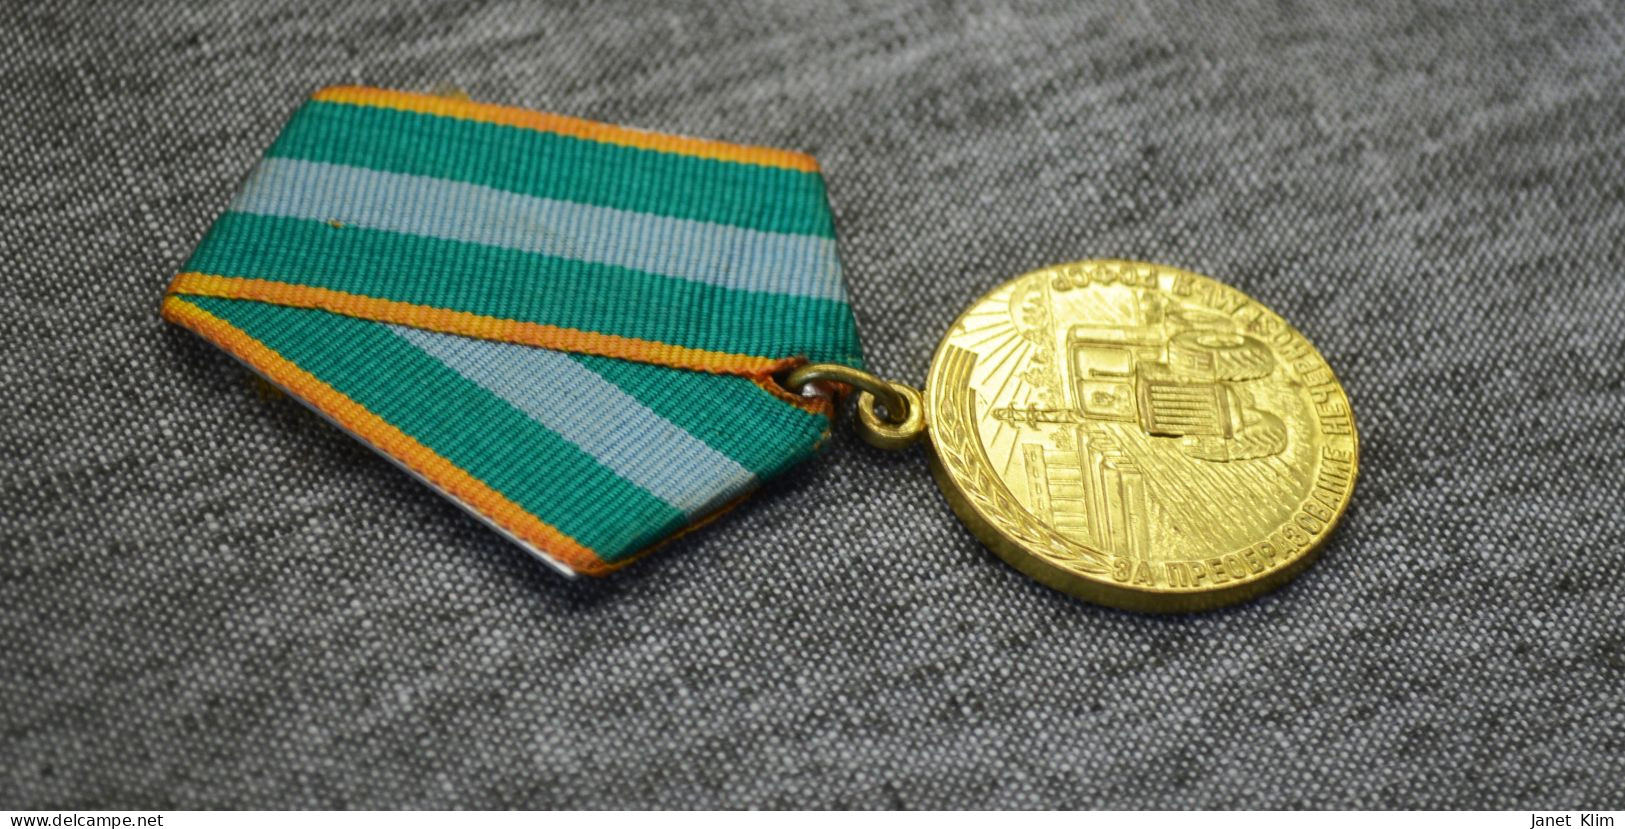 Медаль За преобразование Нечерноземья РСФСР-Medal For The Transformation Of The Non-Chernozem Region Of The RSFSR - Russia